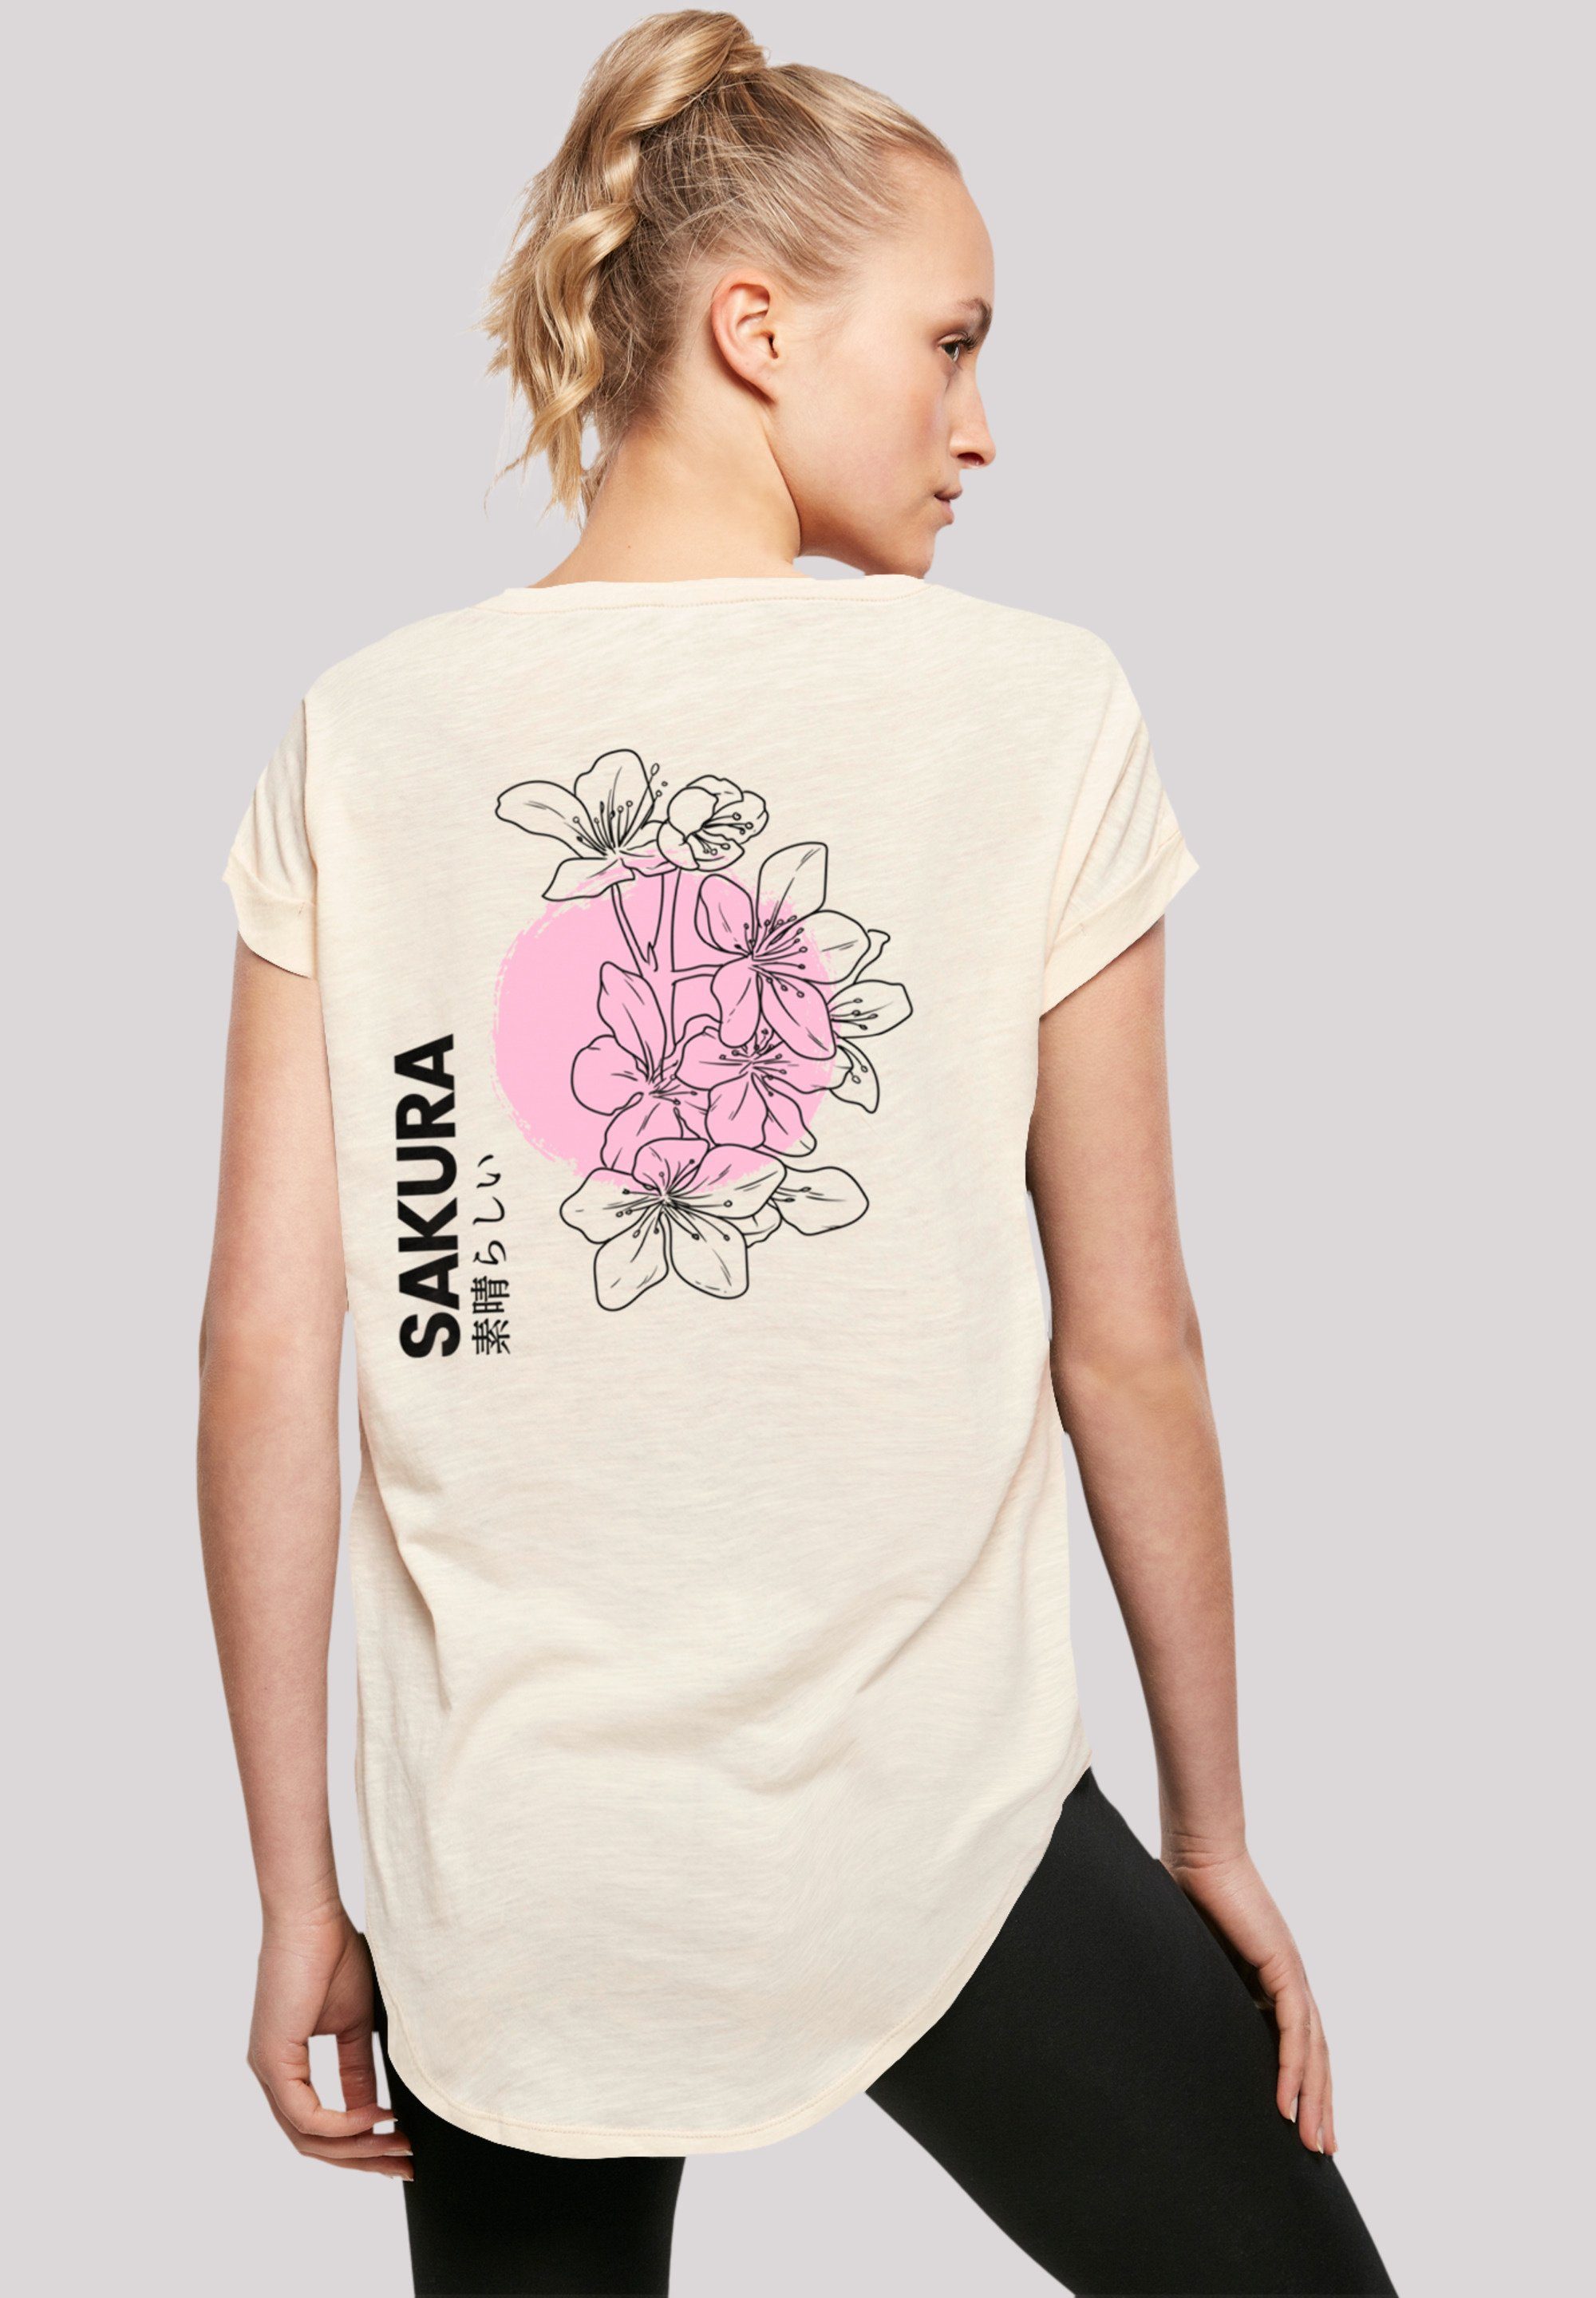 T-Shirt weicher hohem Sakura Sehr mit Tragekomfort Japan Grafik Baumwollstoff F4NT4STIC Print,